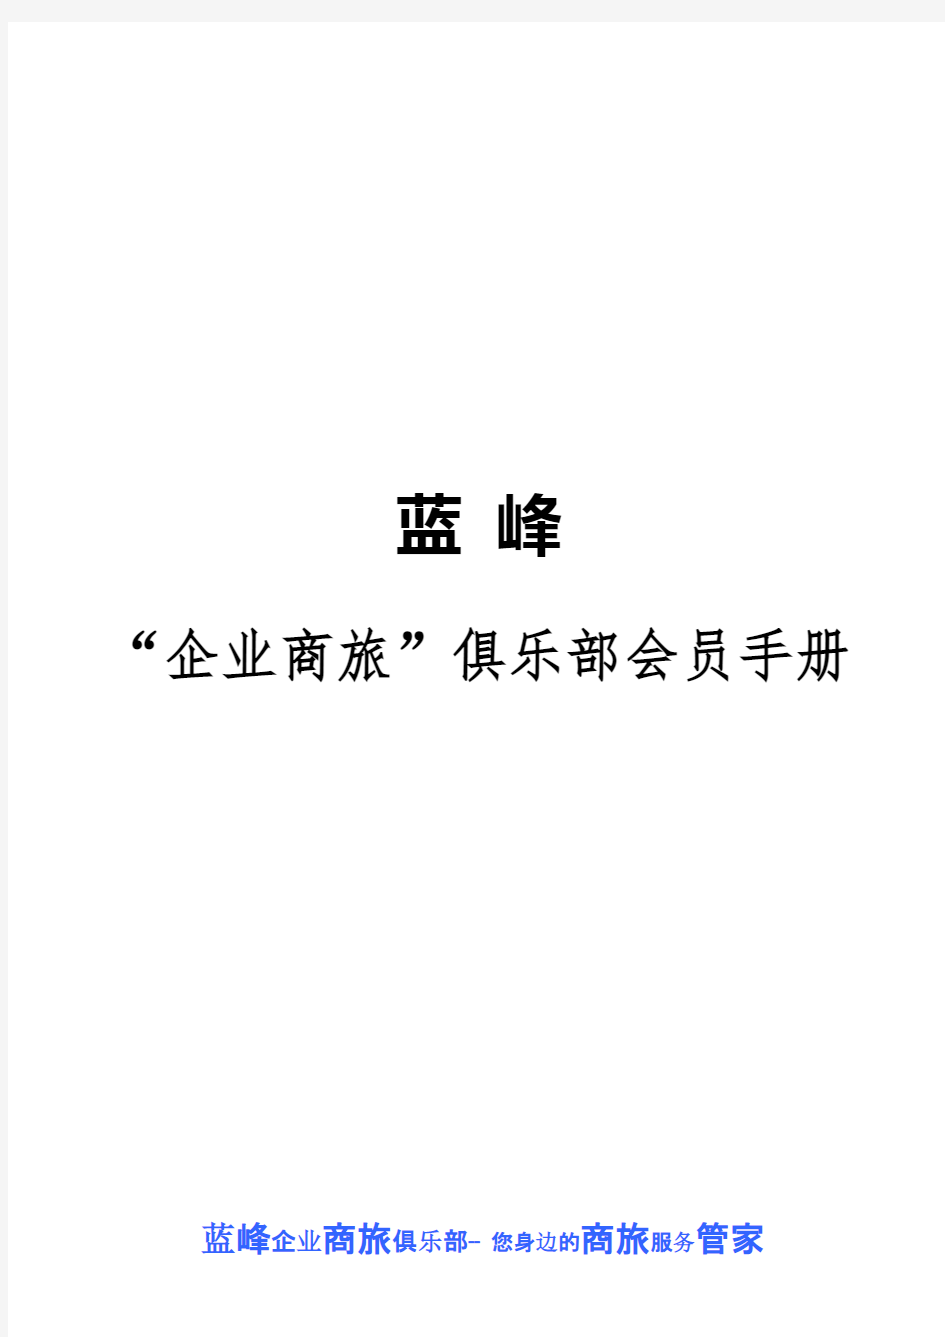 蓝峰俱乐部会员手册9.13